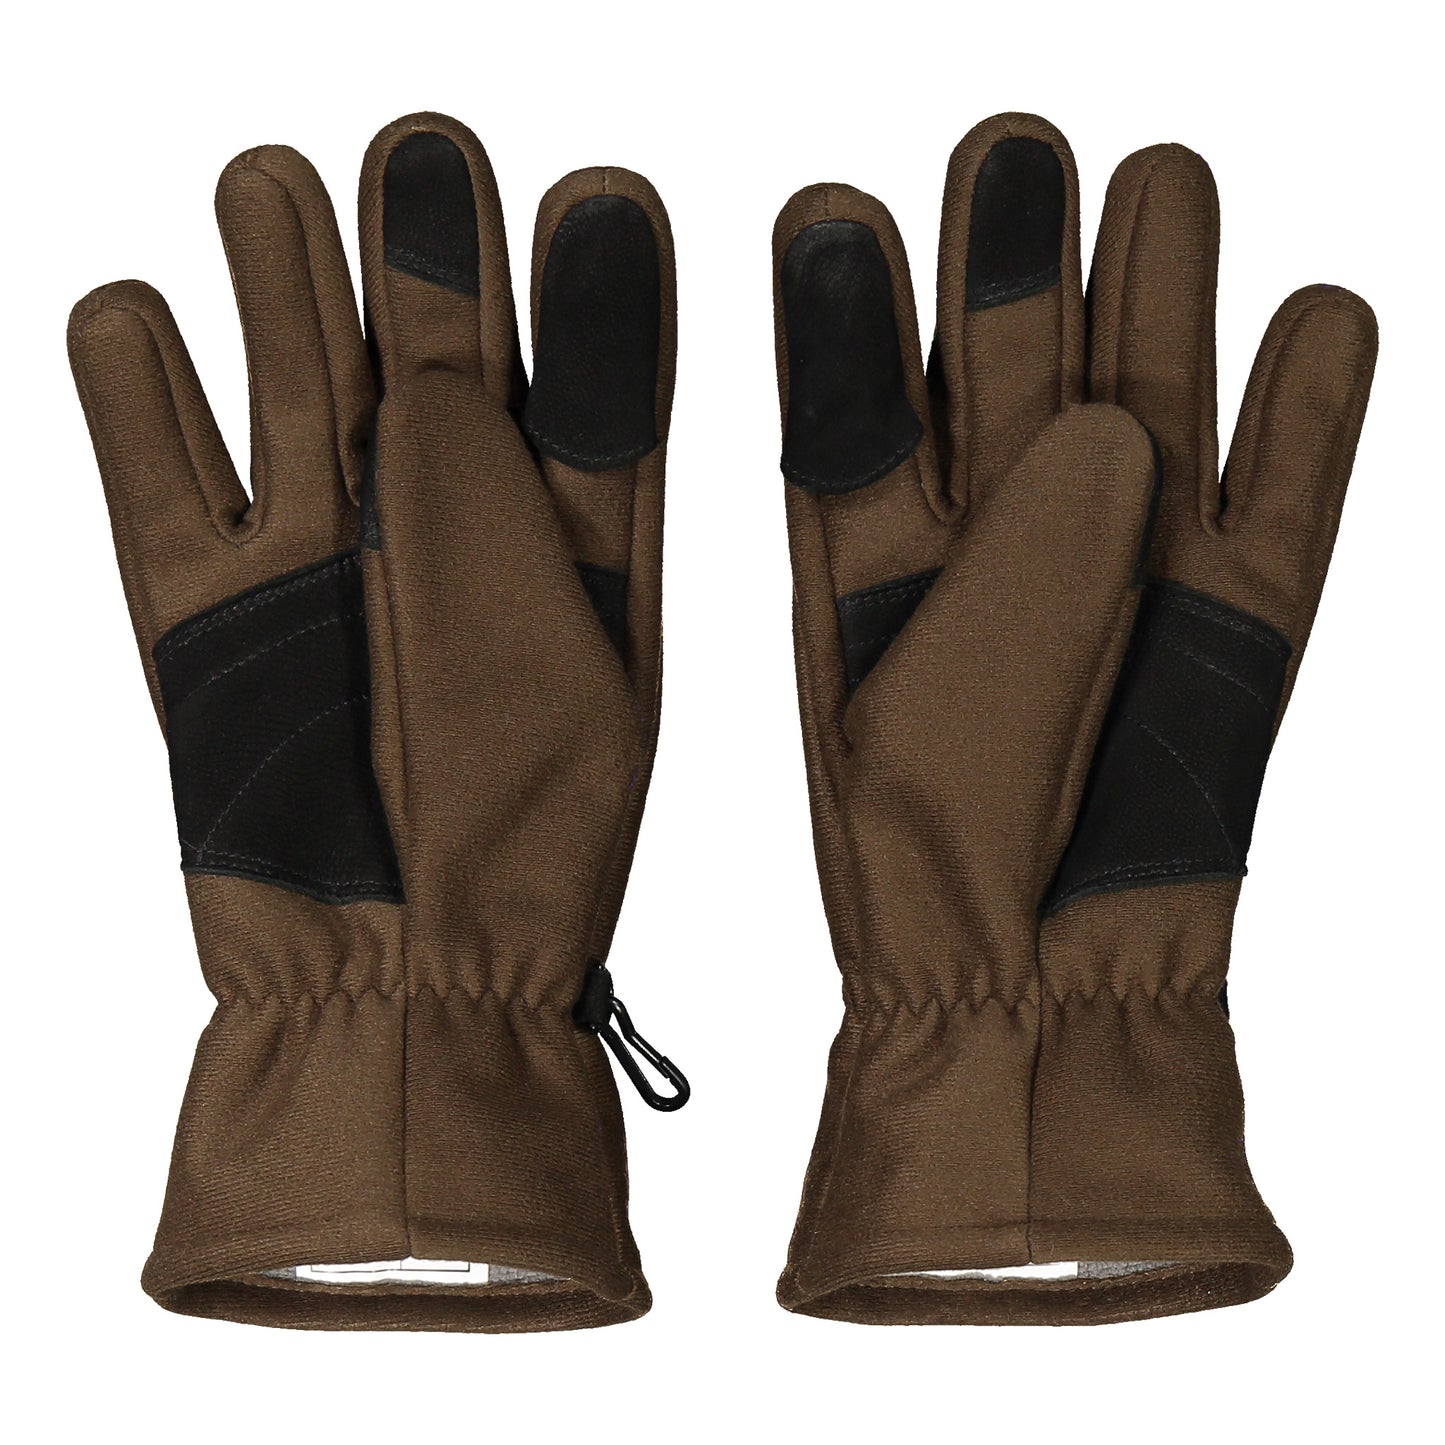 Mehto WS gloves